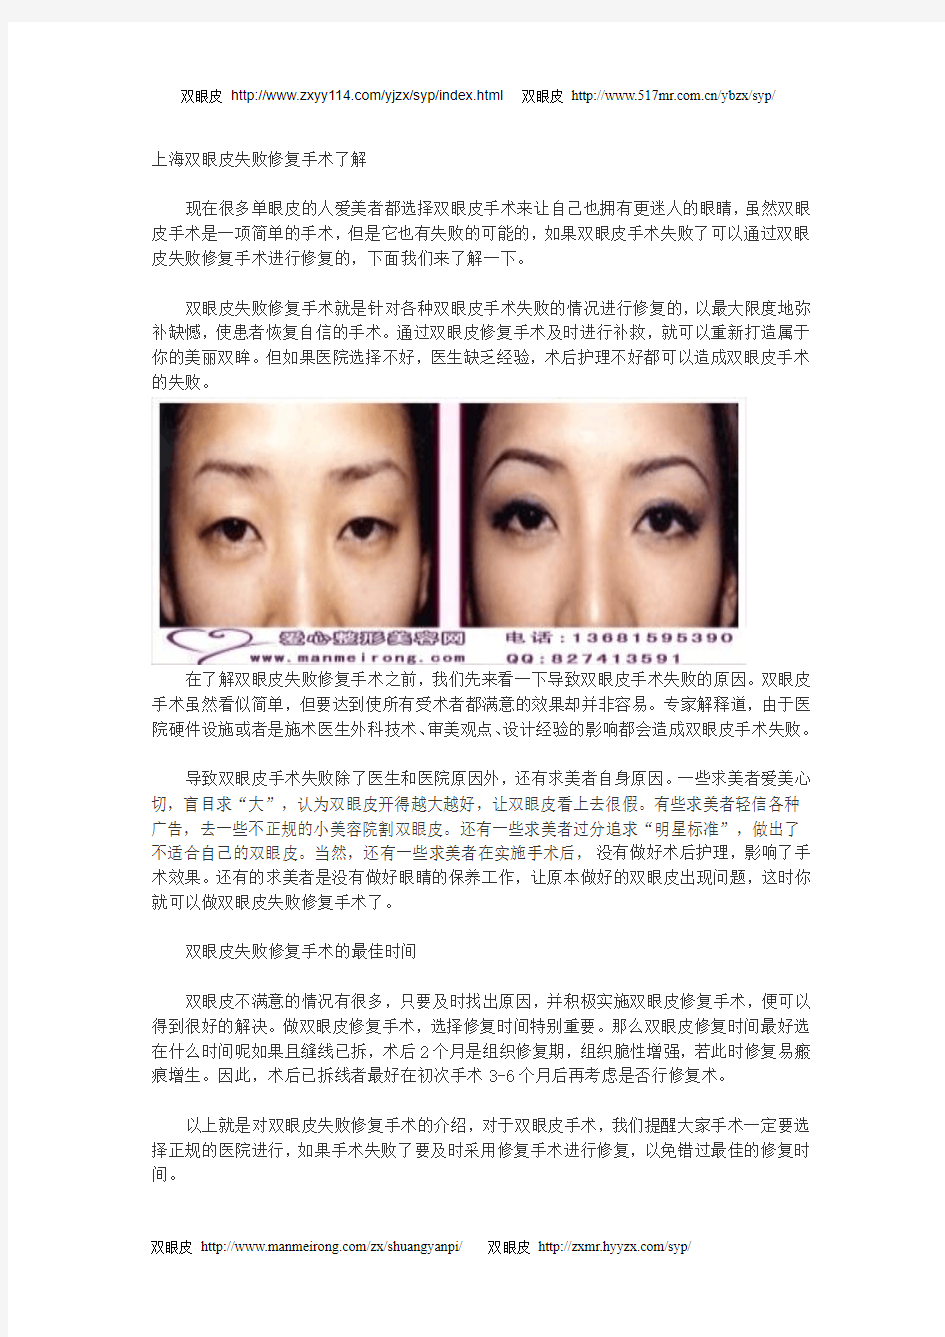 上海双眼皮失败修复手术了解